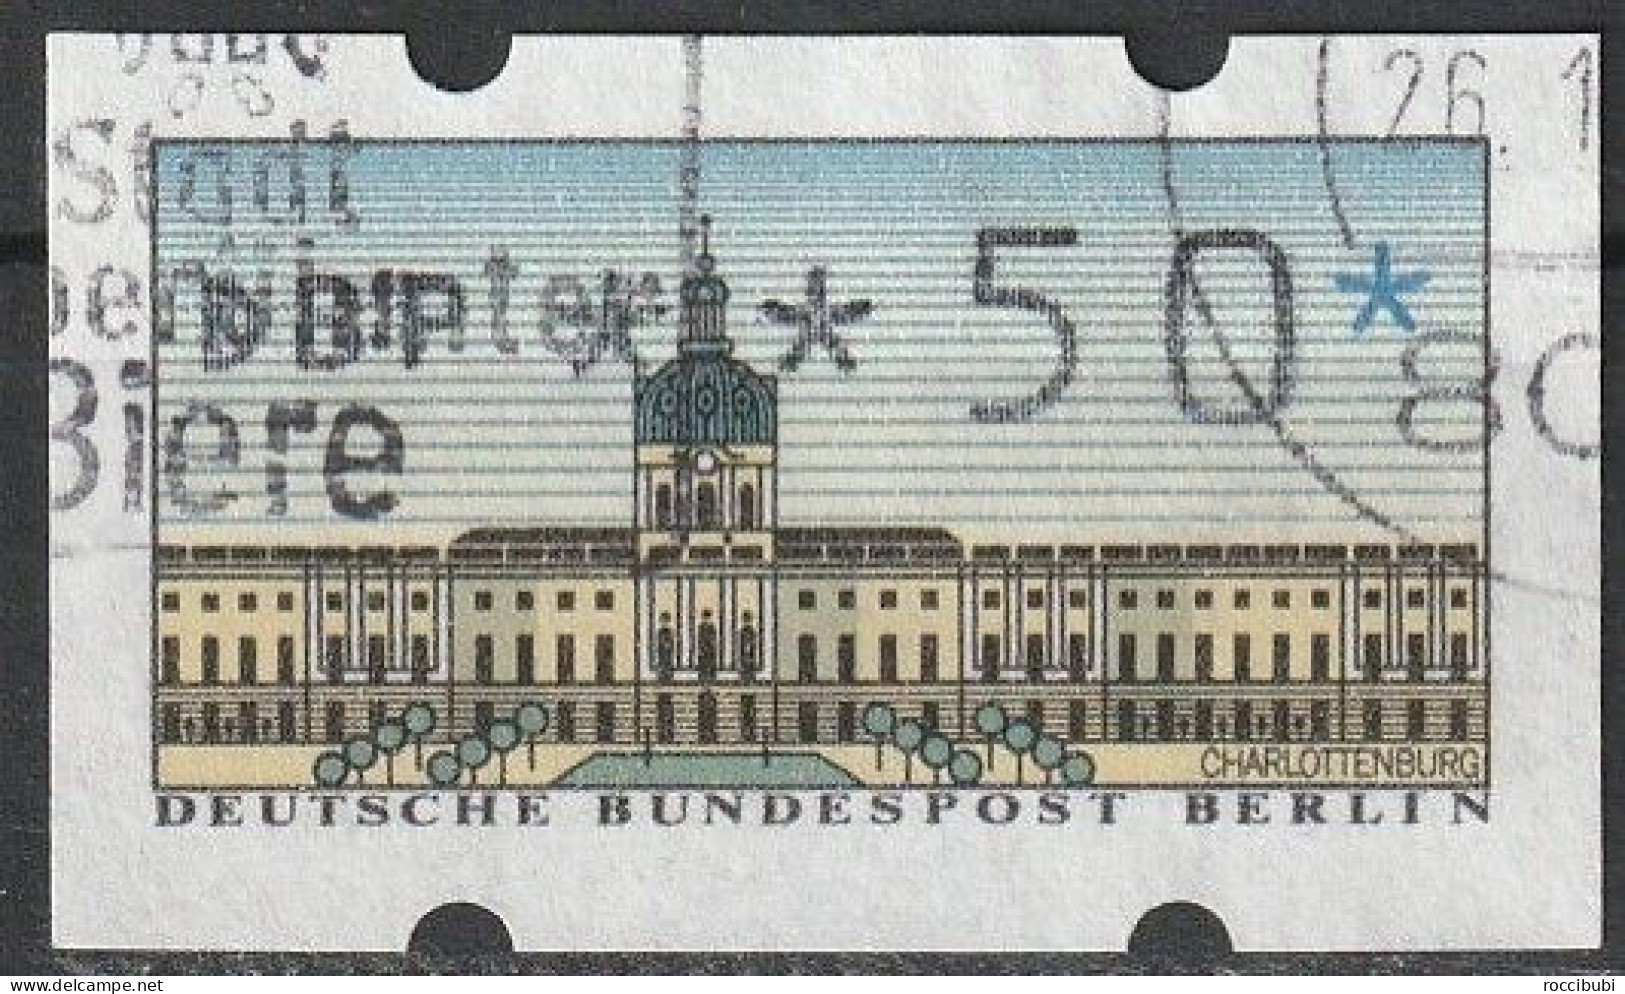 Berlin ATM 0,50 DM - Machine Labels [ATM]